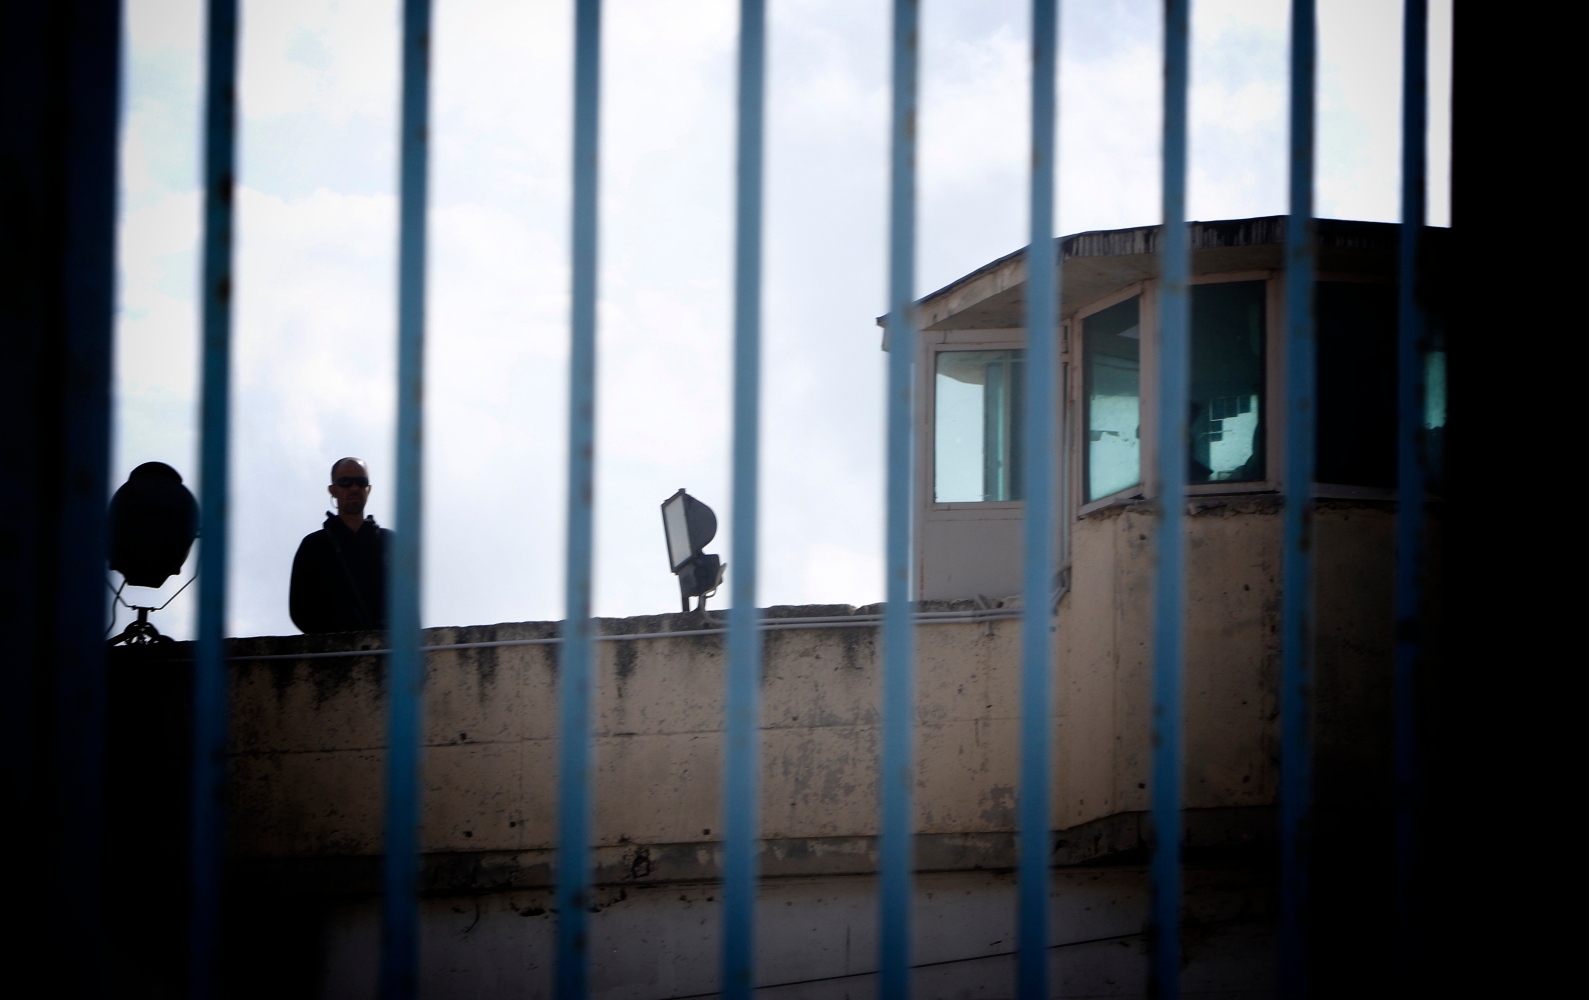 Κορυδαλλός: Κρατείται ακρωτηριασμένος άντρας χωρίς να έχει καταδικαστεί